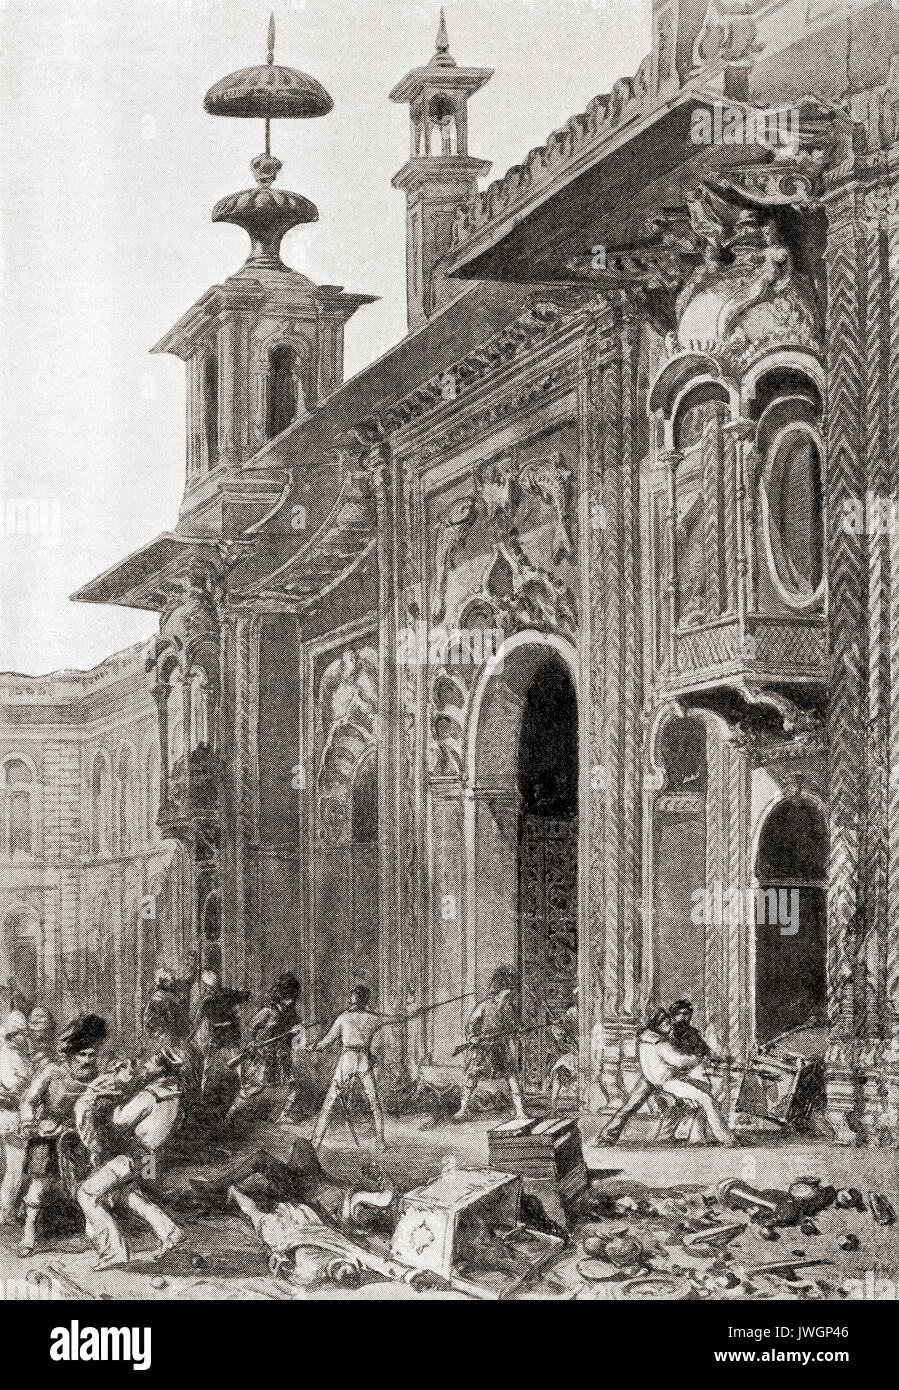 Les pillages des soldats britanniques Qaisar Bagh Palace, Lucknow, Uttar Pradesh, Inde après sa récupération en 1857. L'histoire de Hutchinson de l'ONU, publié en 1915. Banque D'Images